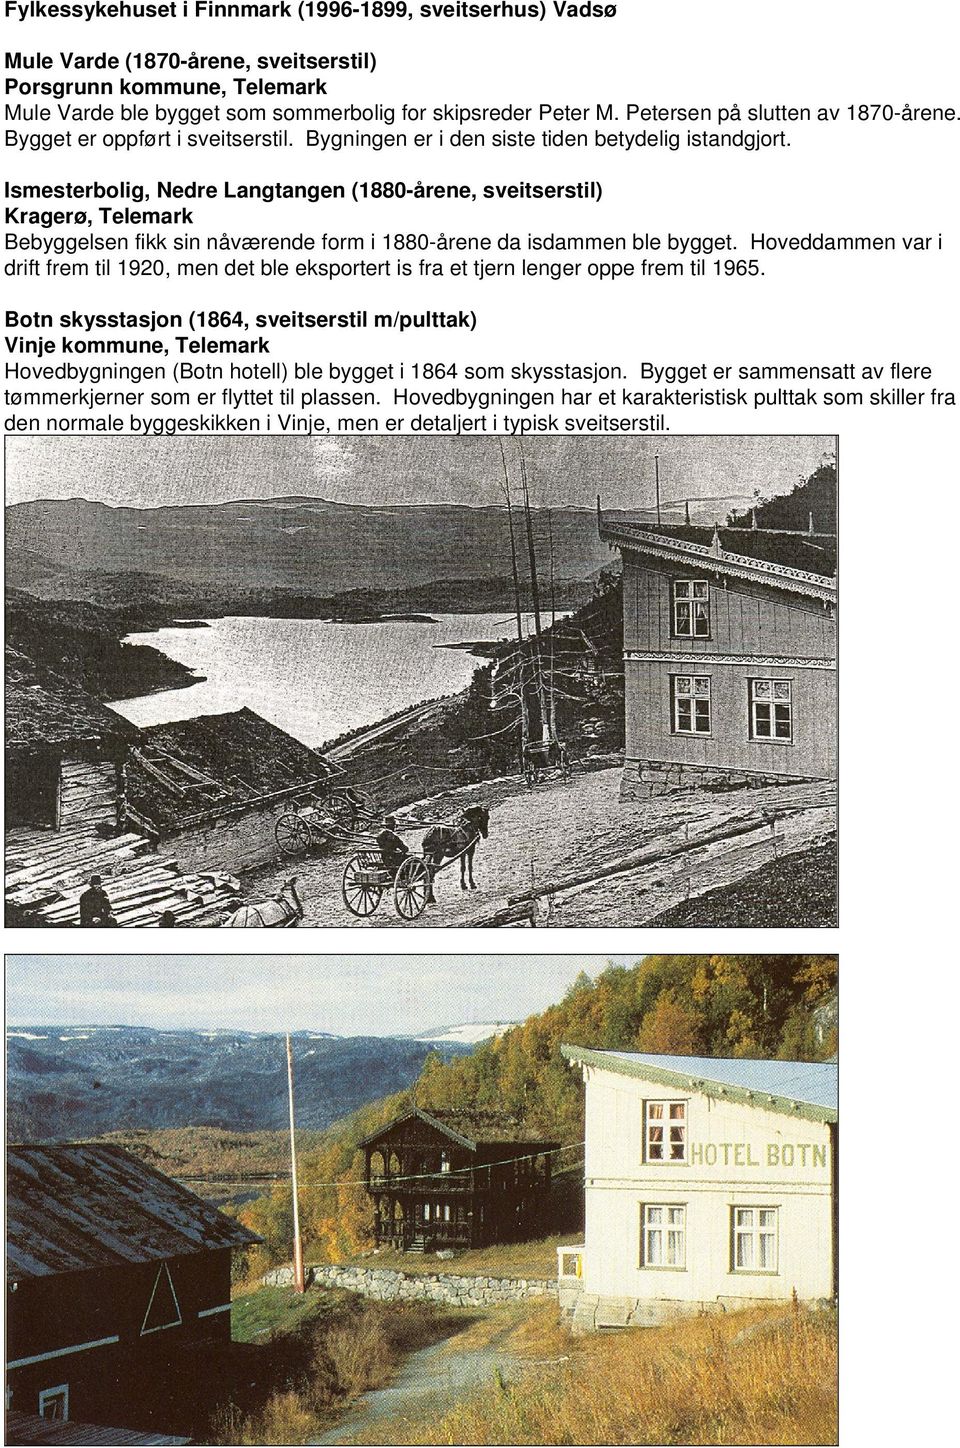 Ismesterbolig, Nedre Langtangen (1880-årene, sveitserstil) Kragerø, Telemark Bebyggelsen fikk sin nåværende form i 1880-årene da isdammen ble bygget.